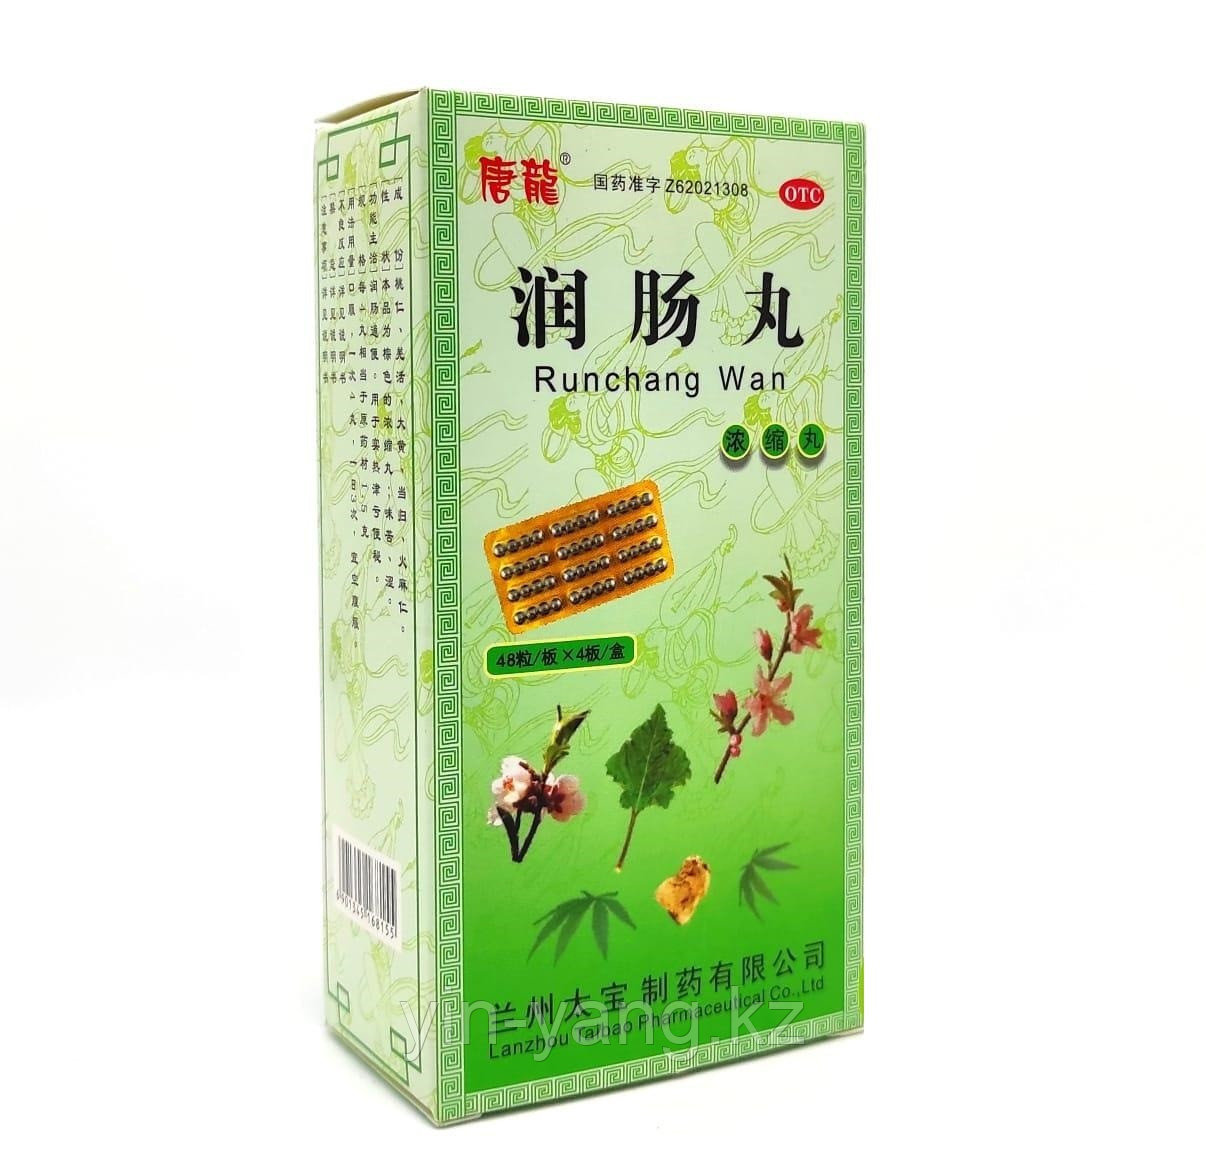 Болюсы "Рунчанг Вань" (Runchang Wan) для увлажнения кишечника и нормализация стула,192 шт